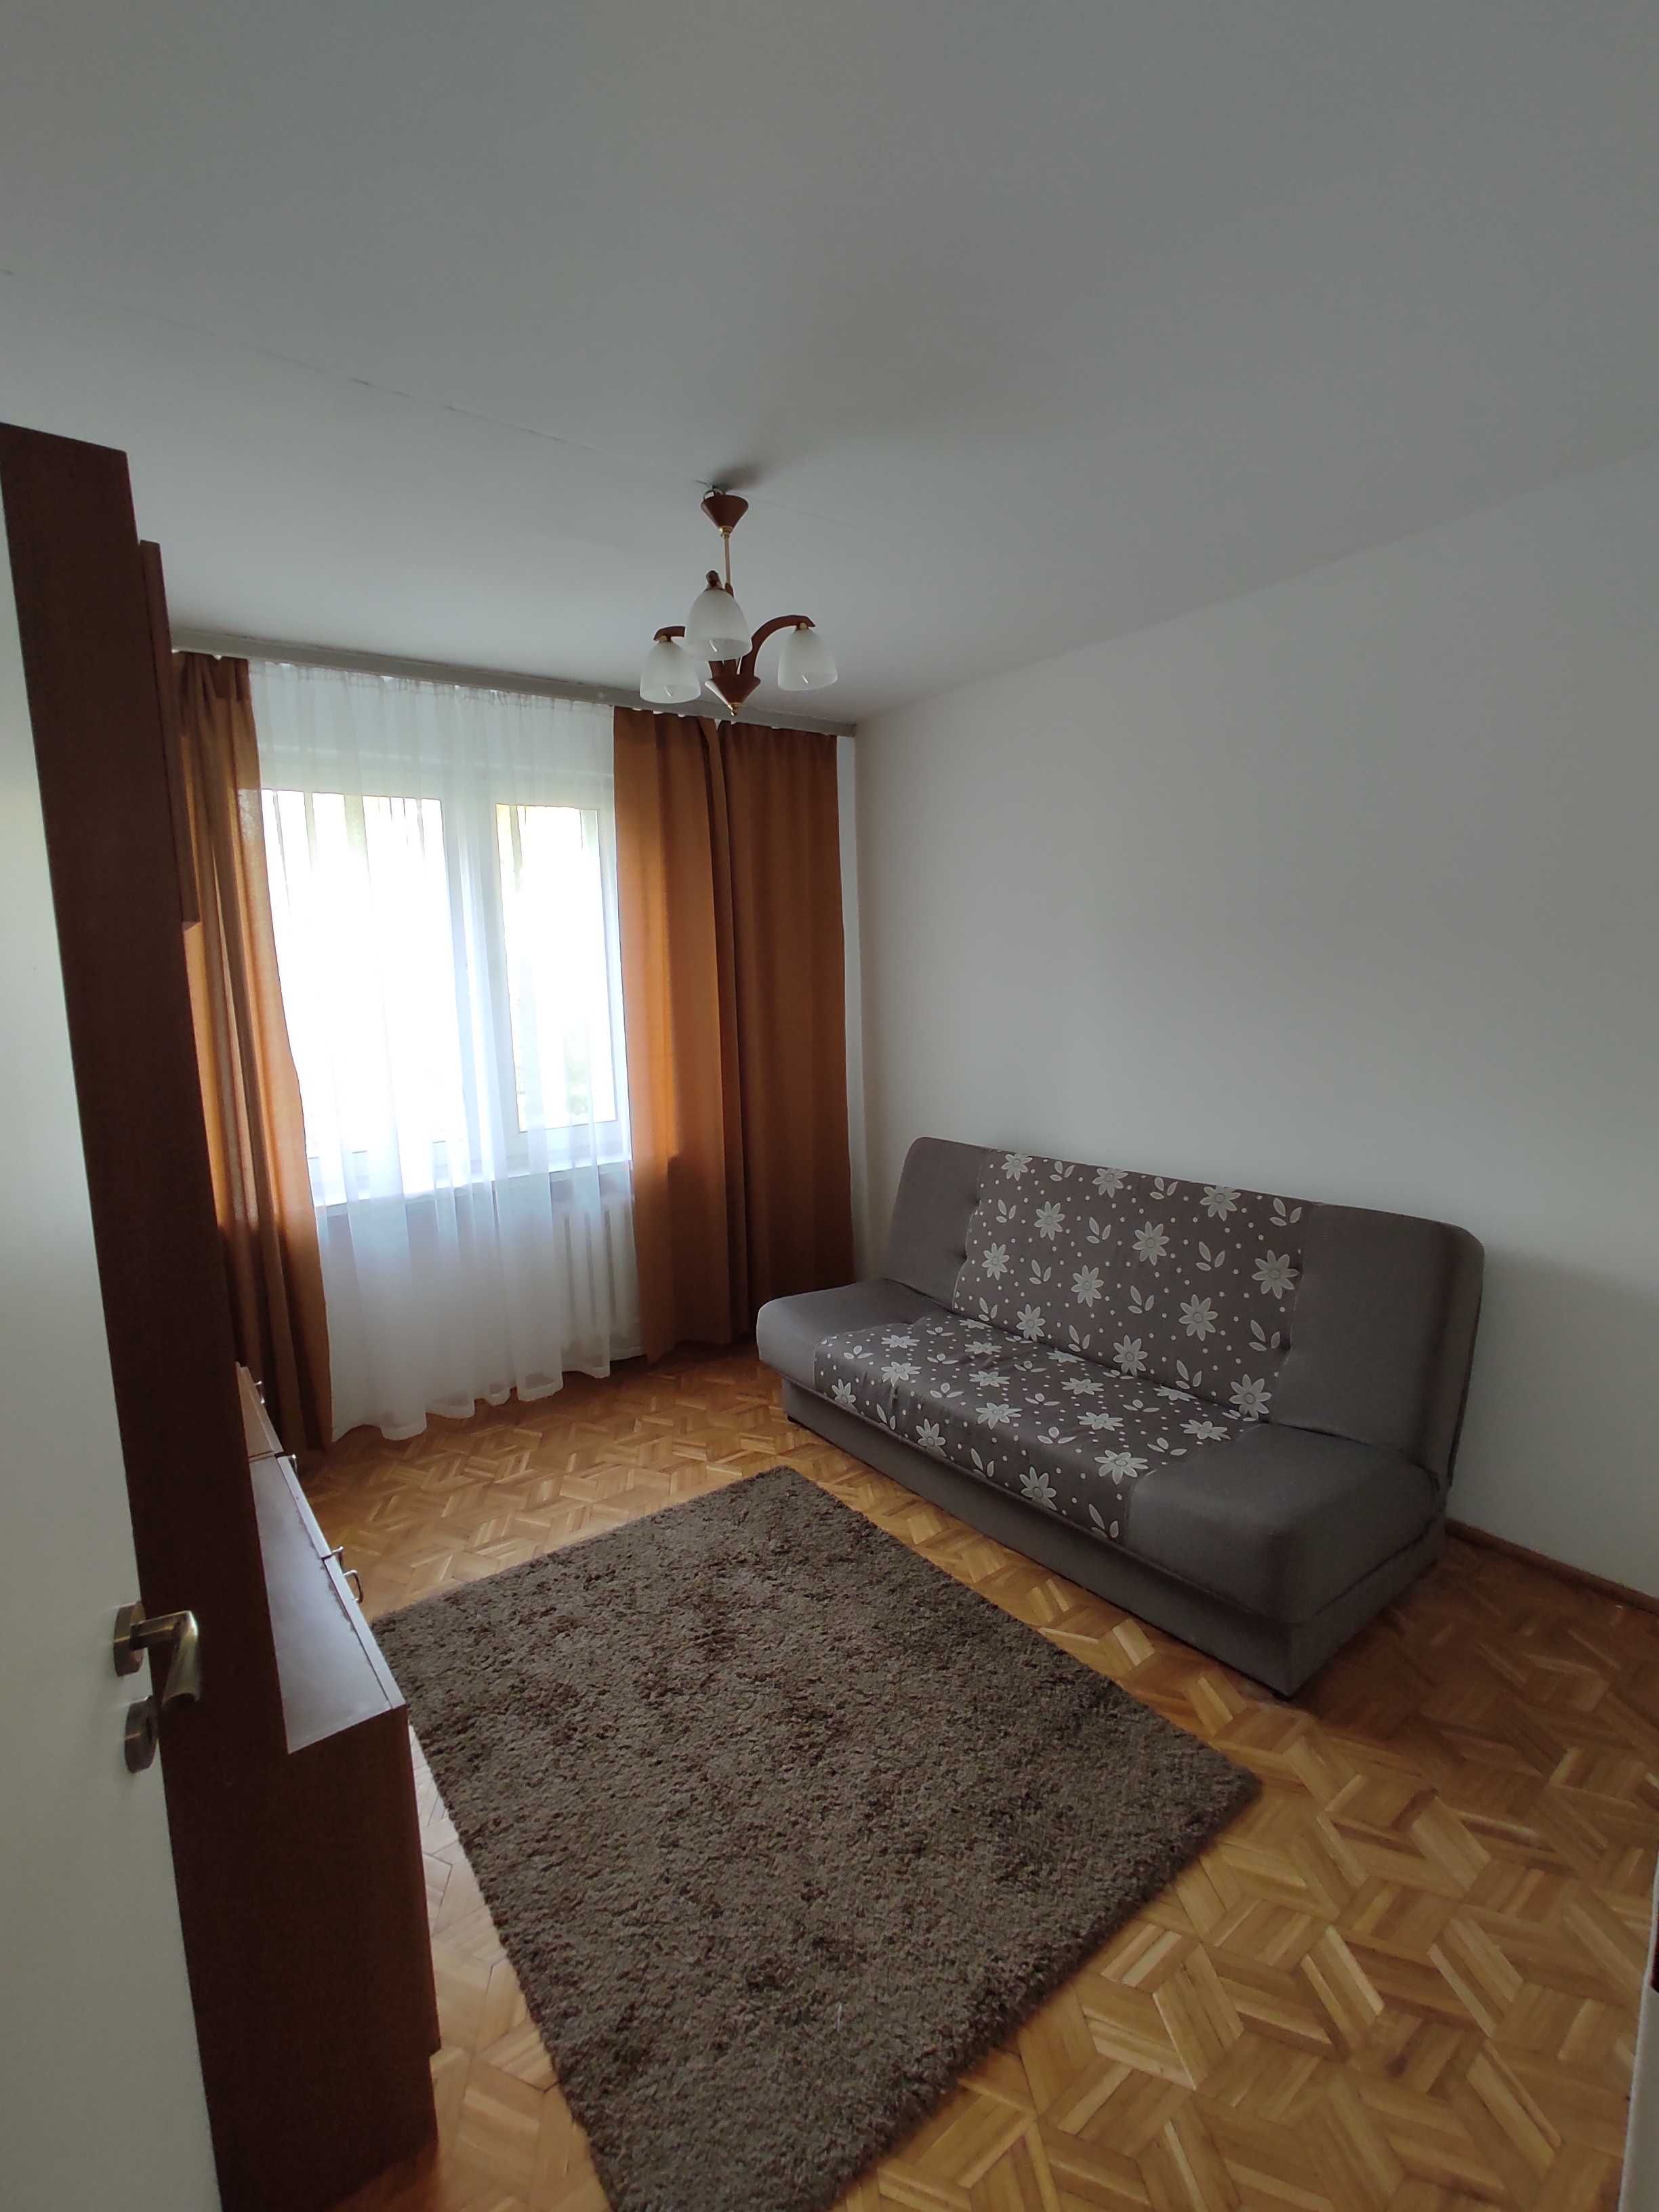 Mieszkanie 60m2 na wynajem, 3 pokoje, Warszawa Ursynów, blisko metra